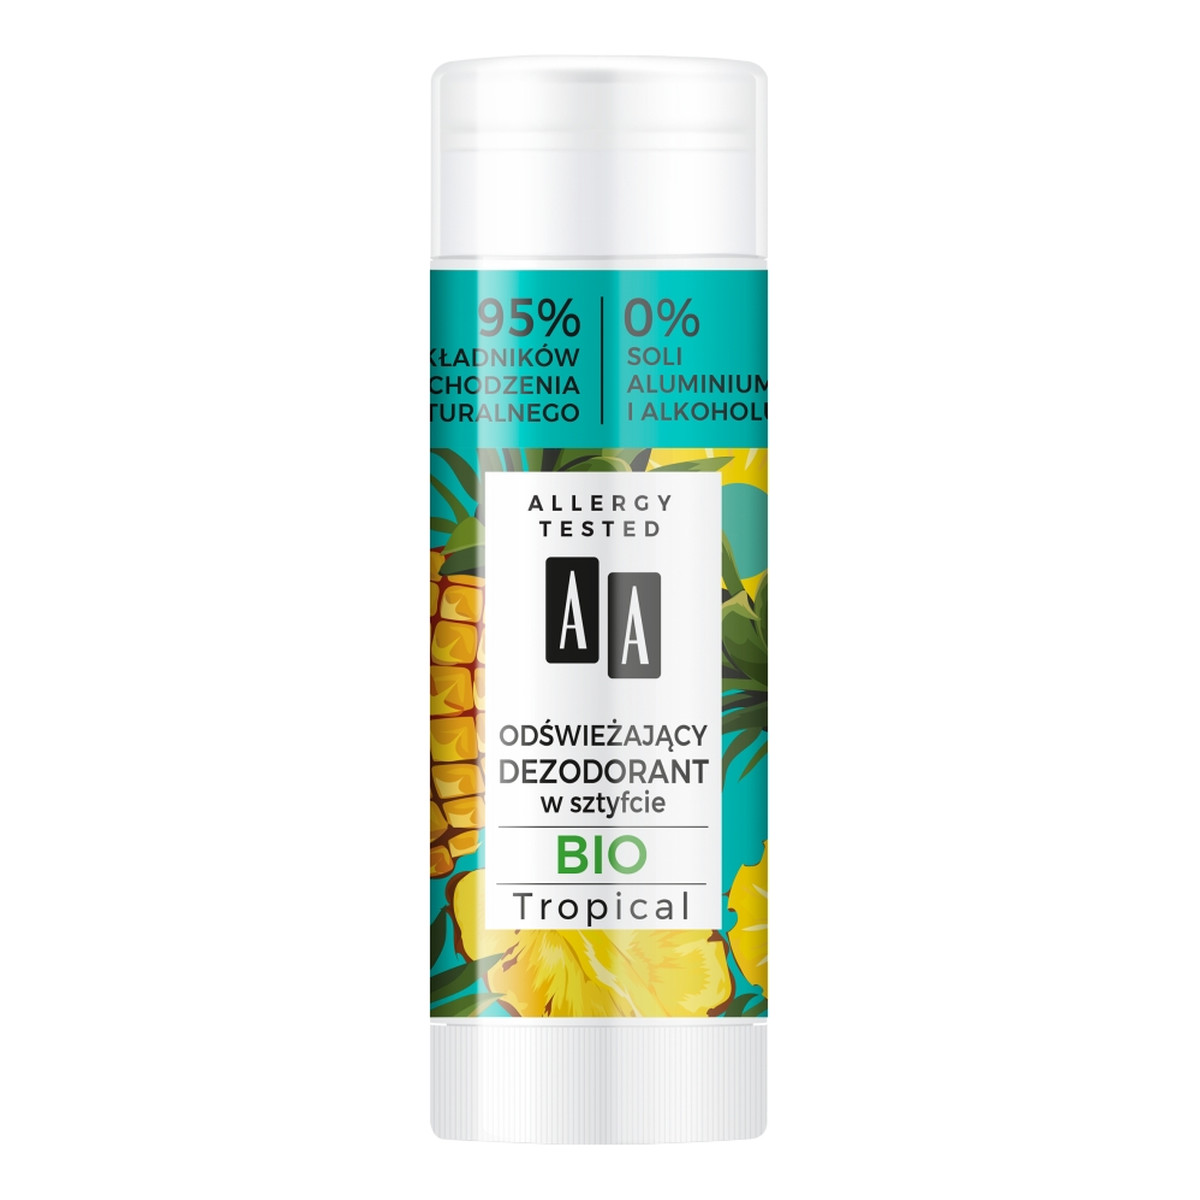 AA Bio Tropical Super Fruits & Deo Stick odświeżający dezodorant w sztyfcie Gio Tropical 25g